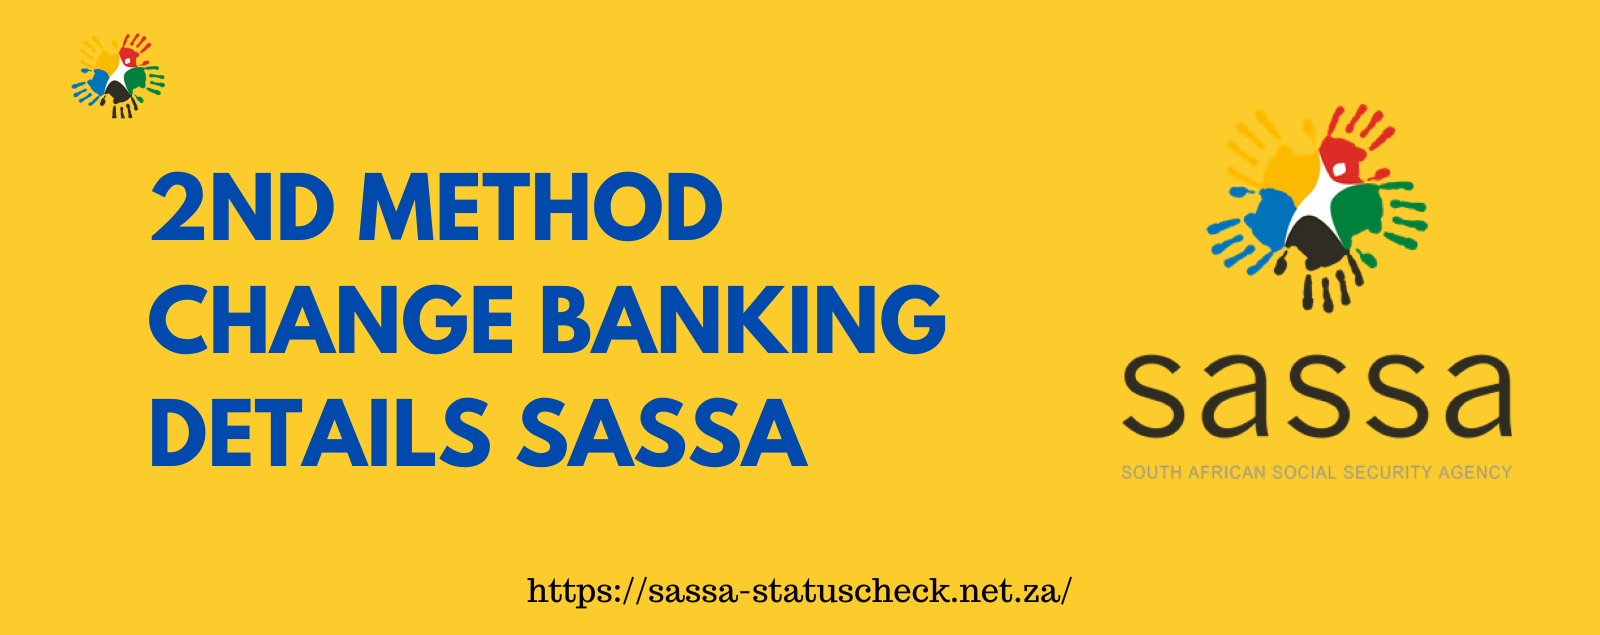 Change Banking Details SASSA